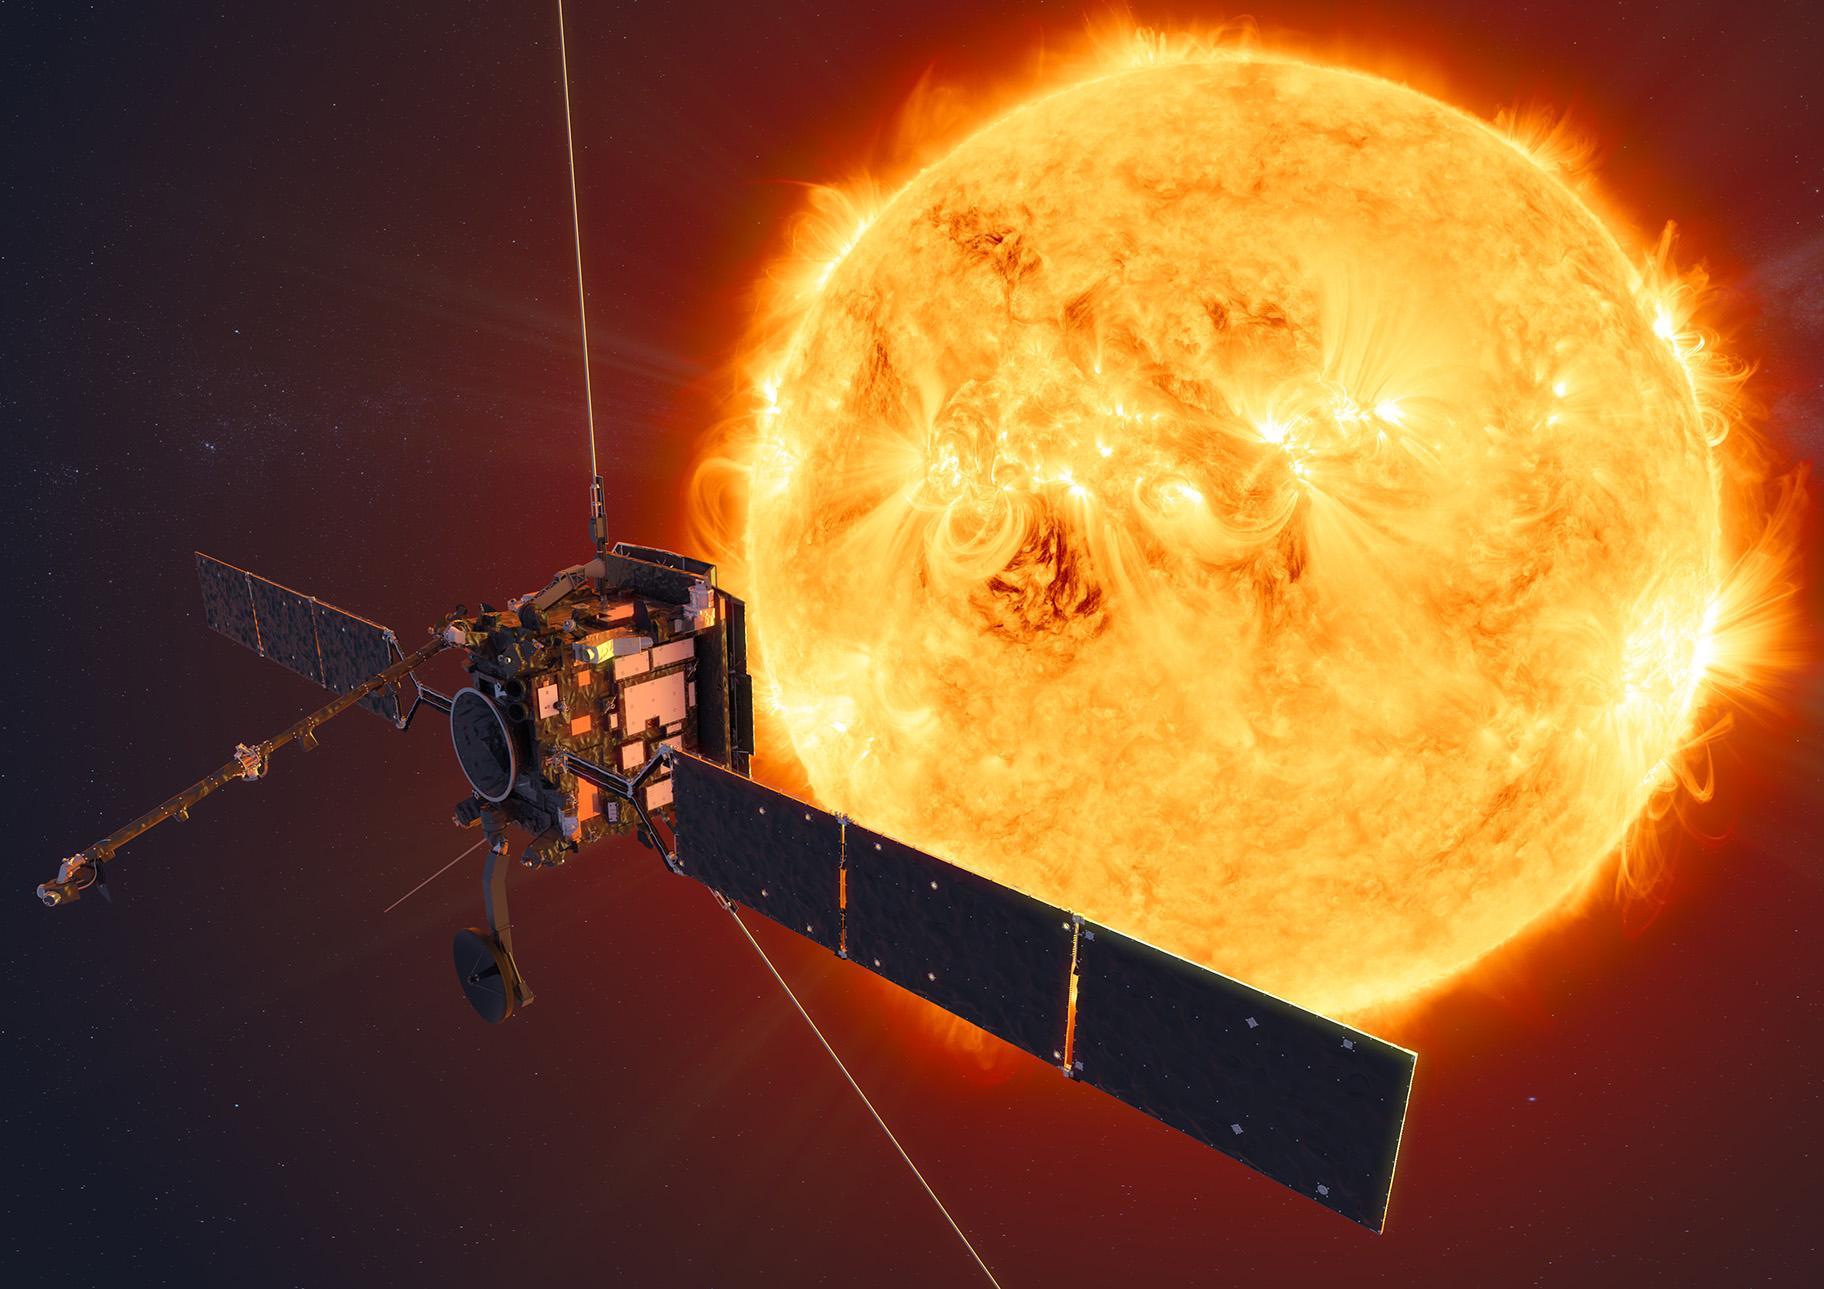 An artist’s impression of Solar Orbiter. (Credit: ESA/ATG medialab)